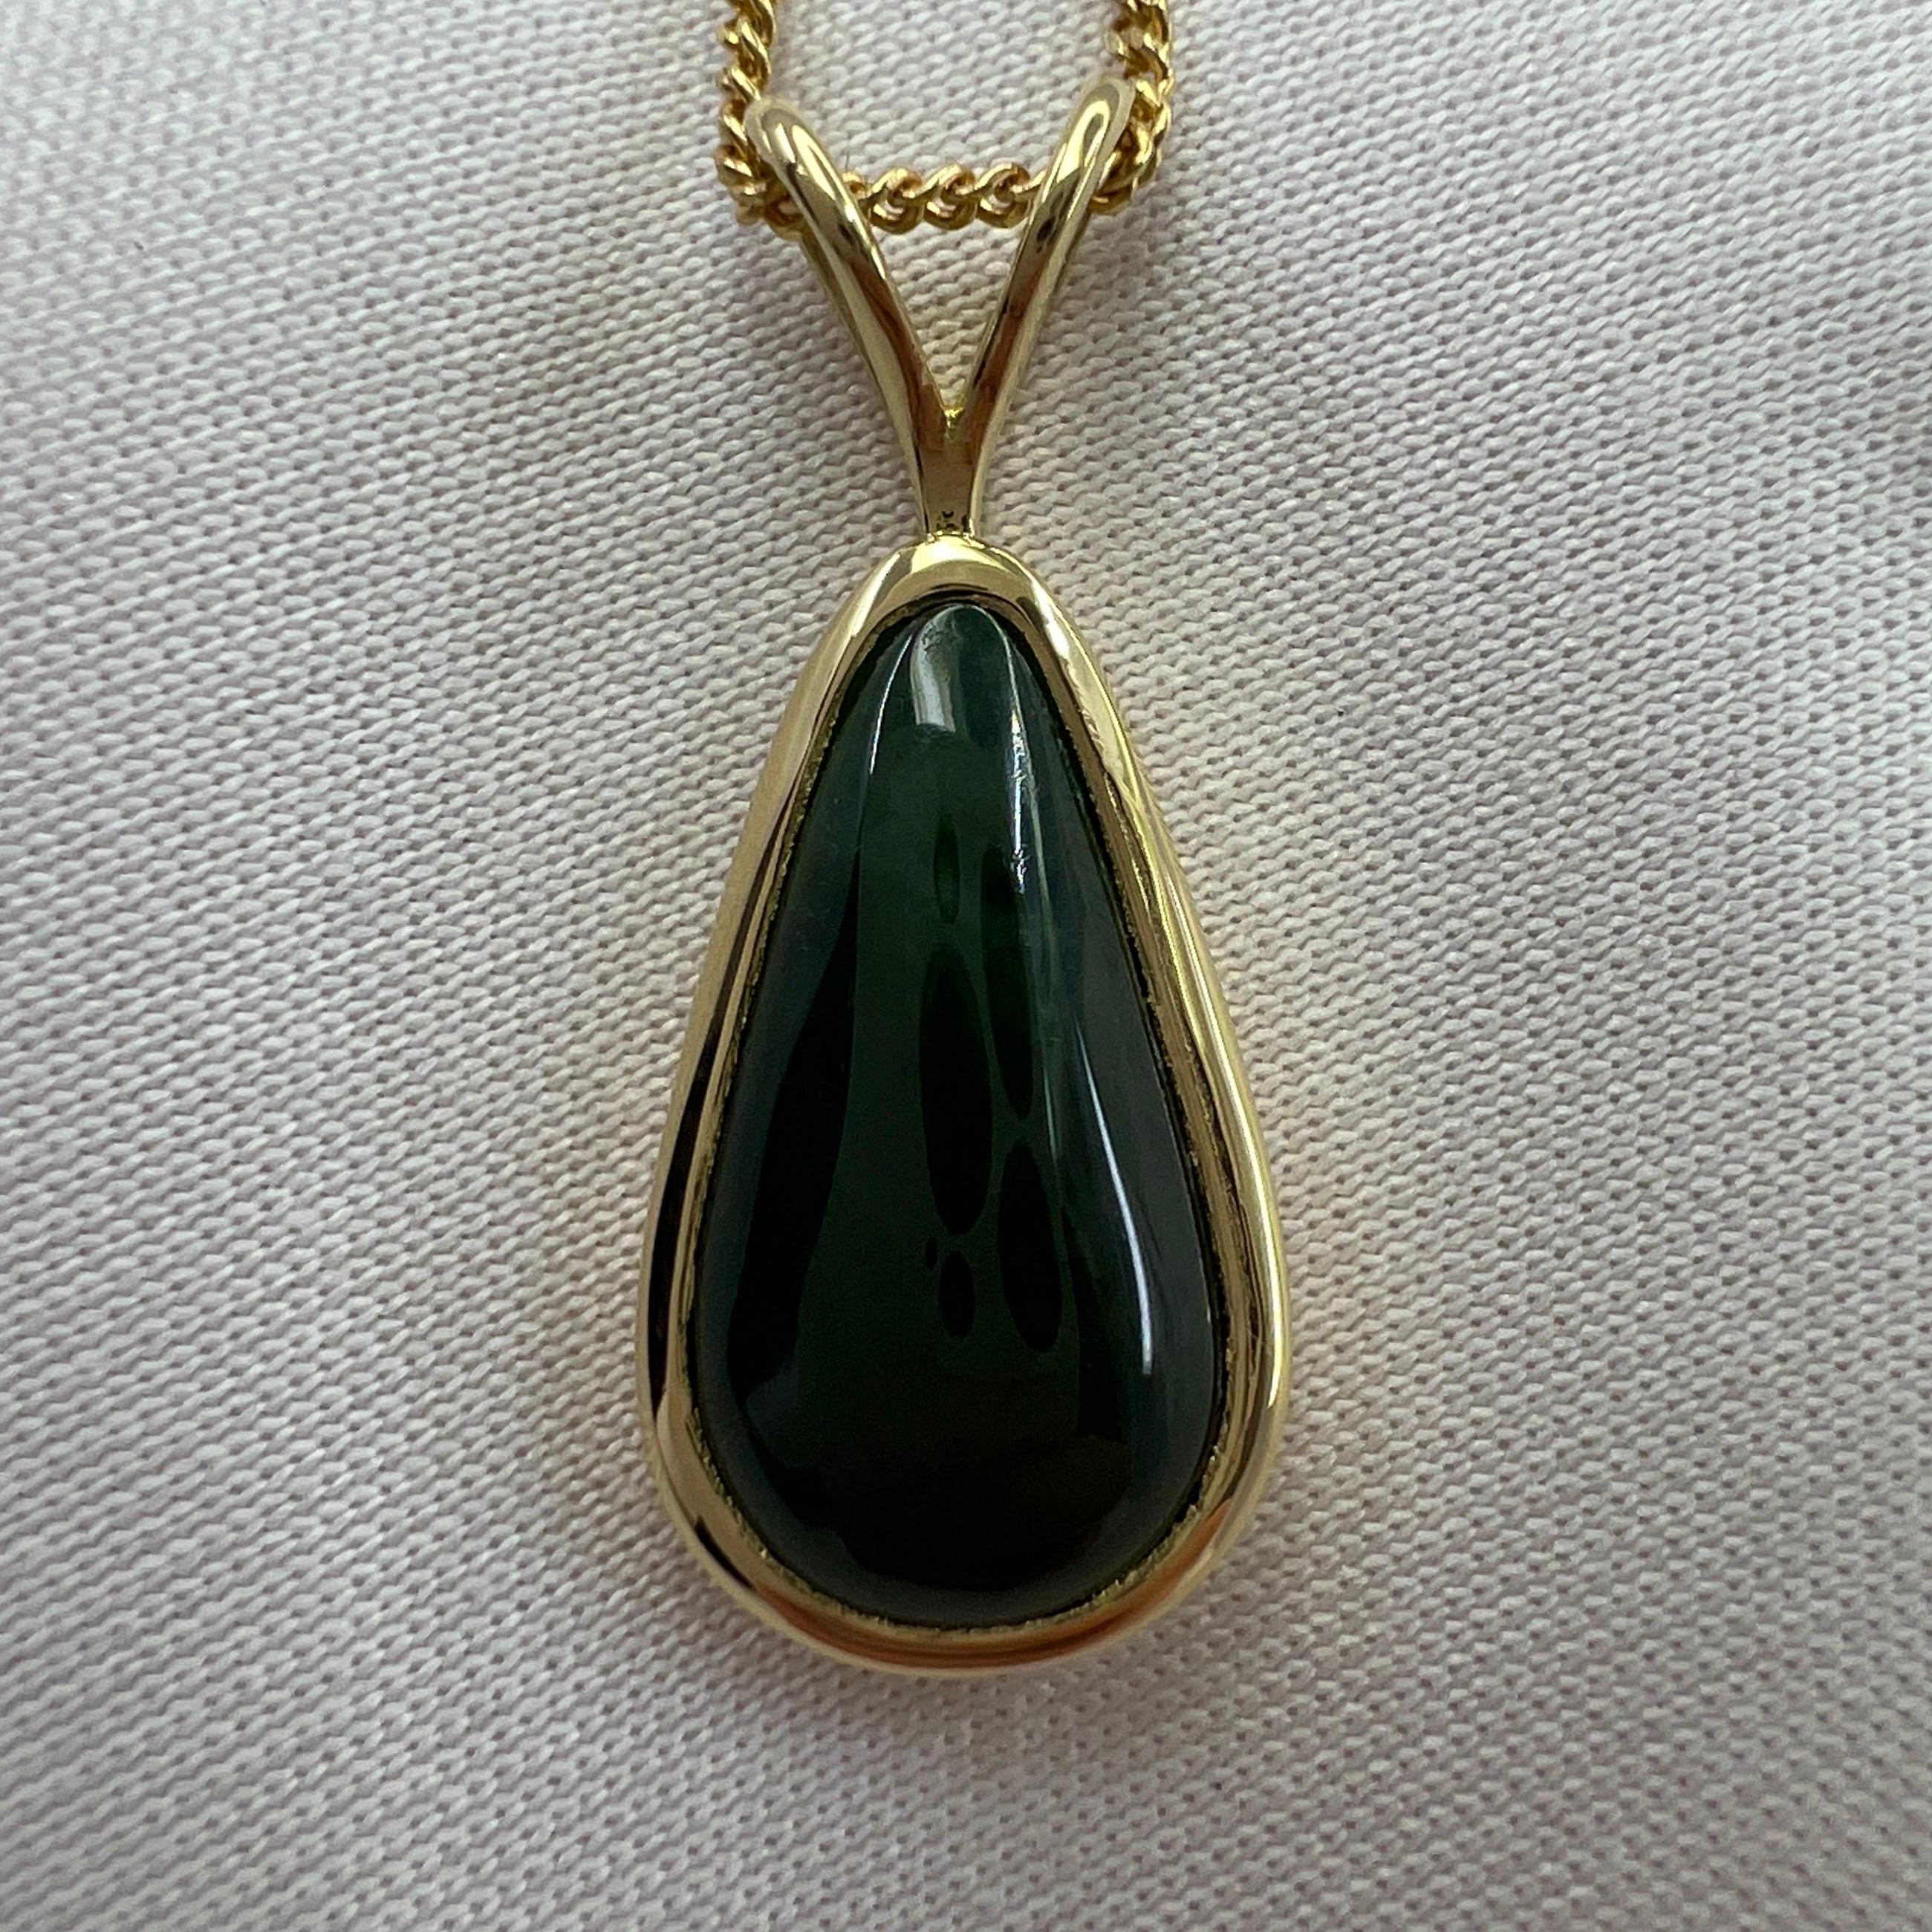 hutton-mdivani jadeite necklace